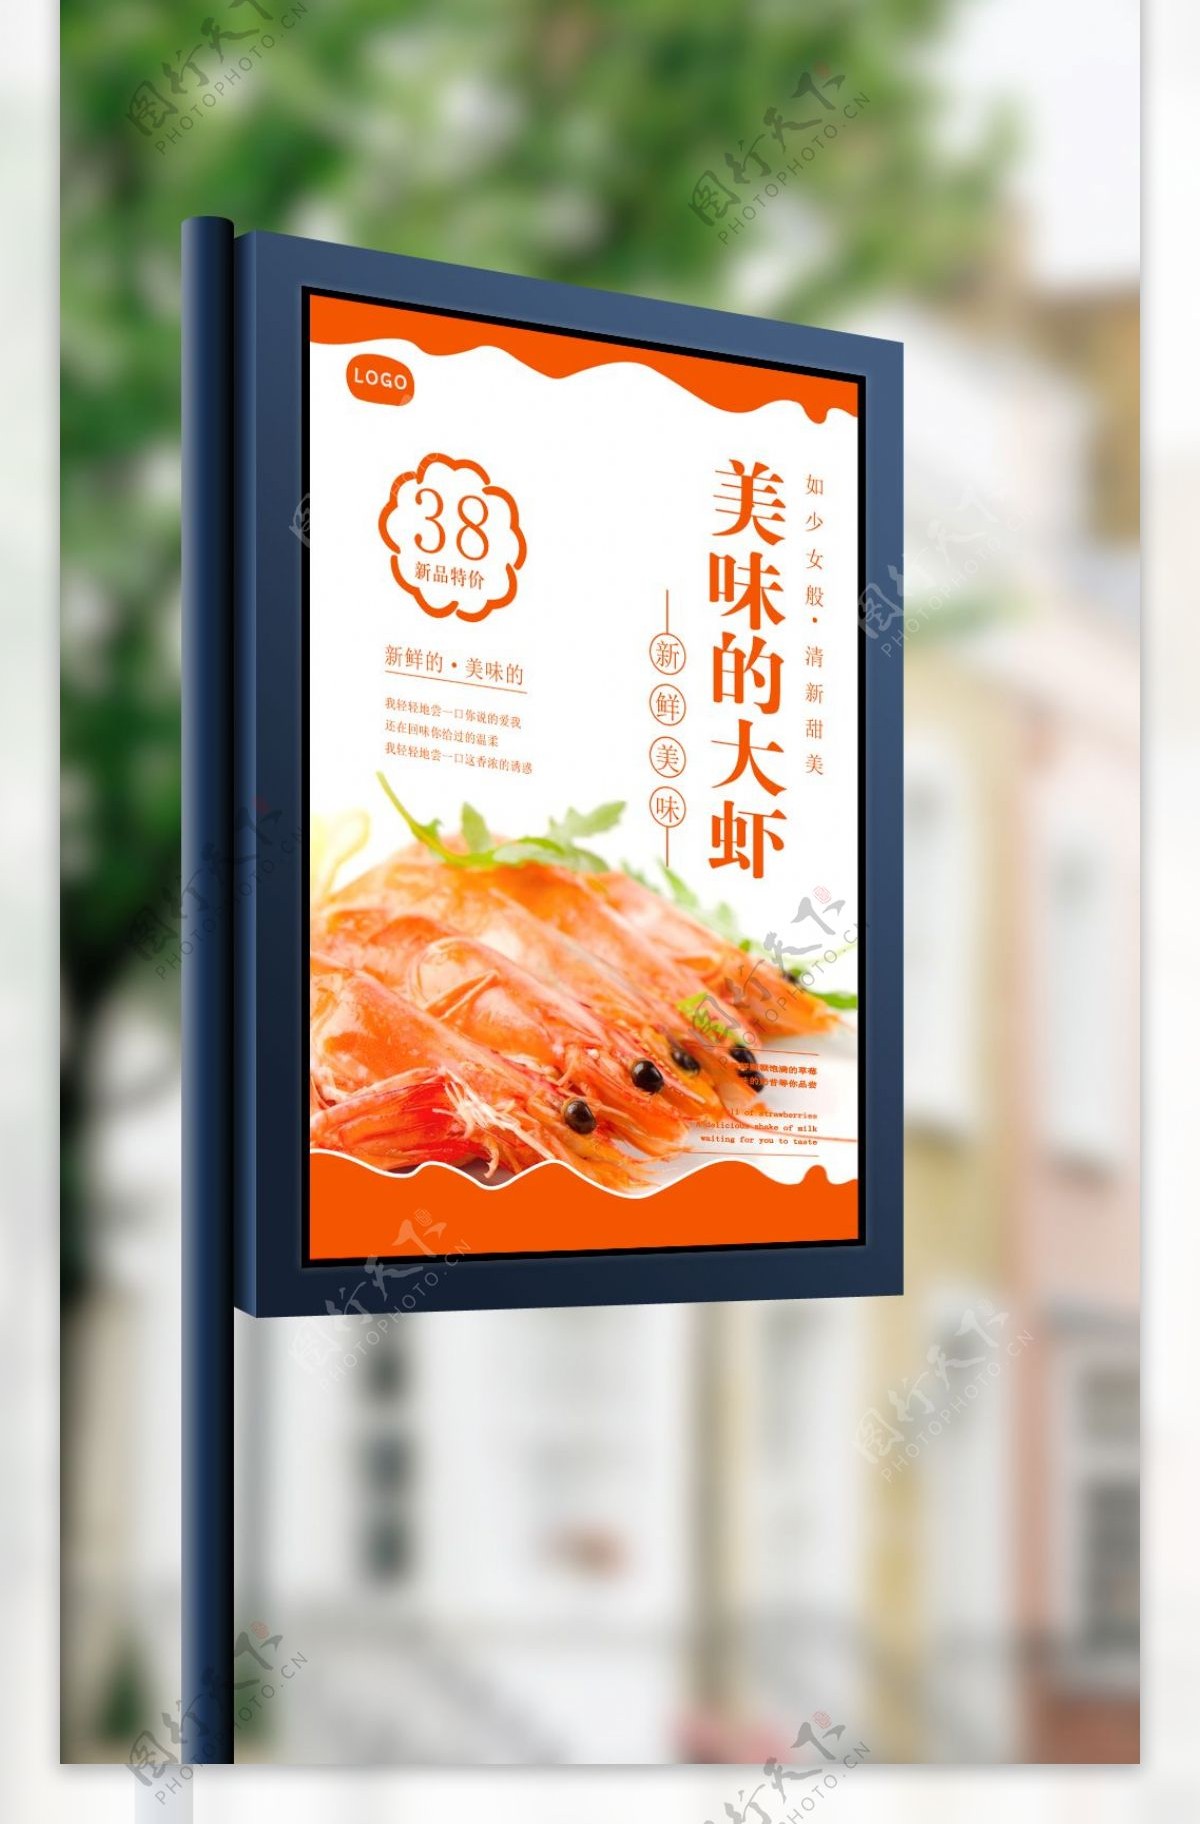 新鲜大虾美食海报设计模板